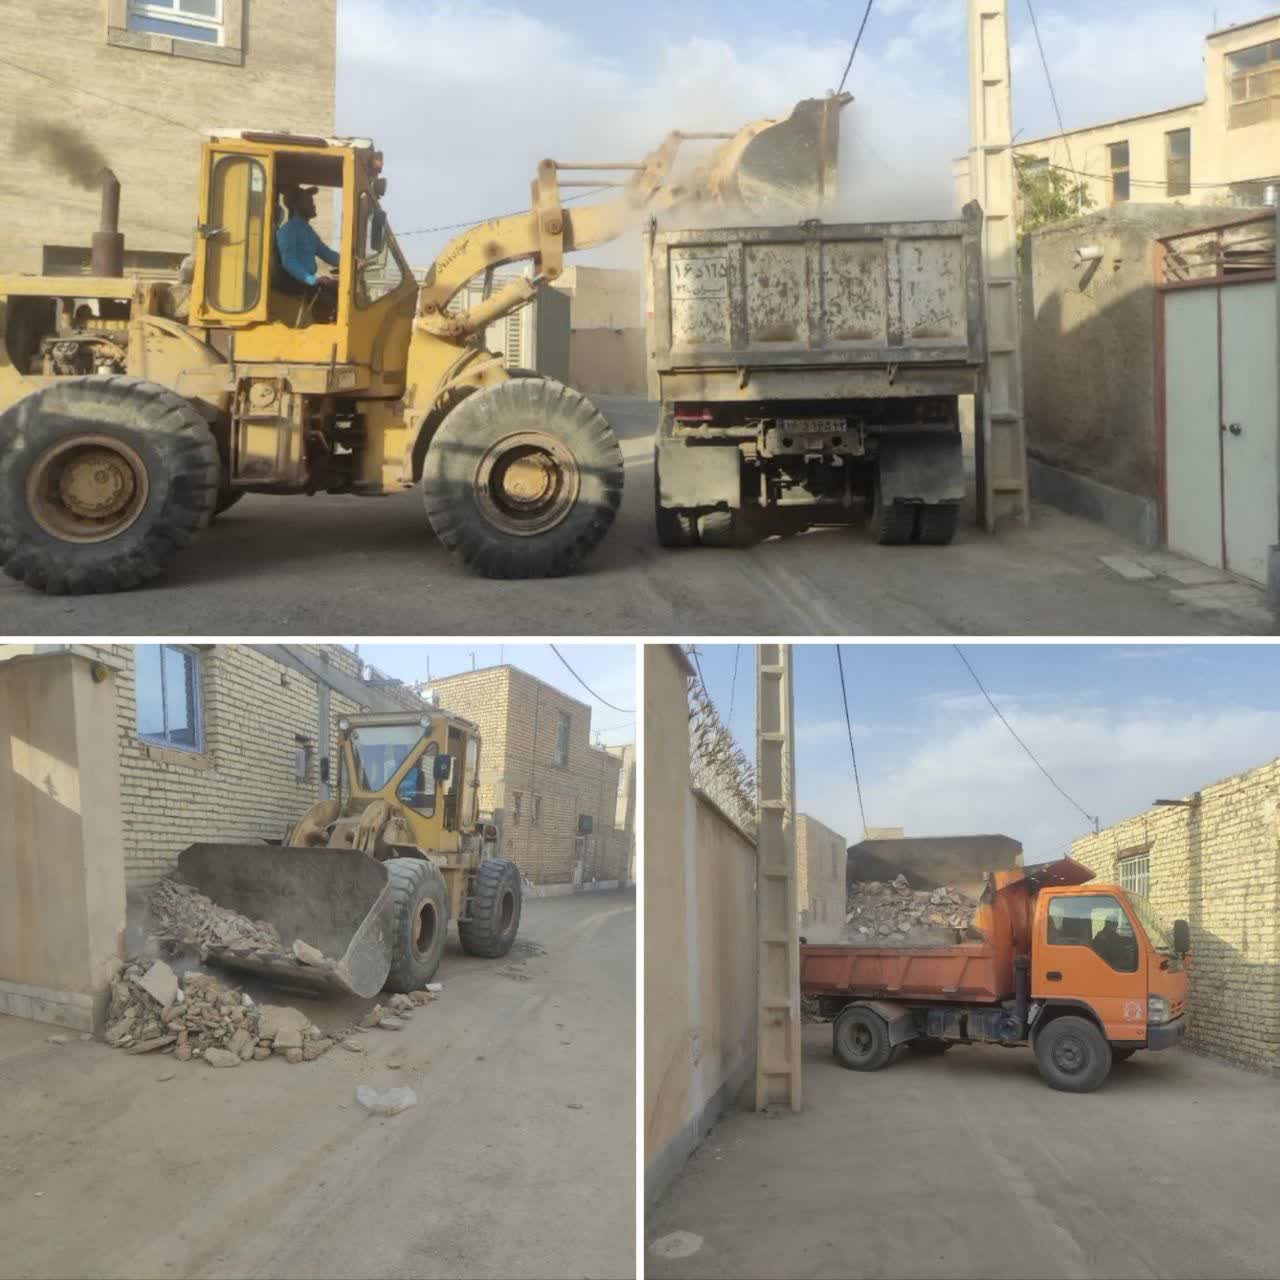 پاکسازی و جمع آوری نخاله های ساختمانی در دستور کار شهرداری وزوان